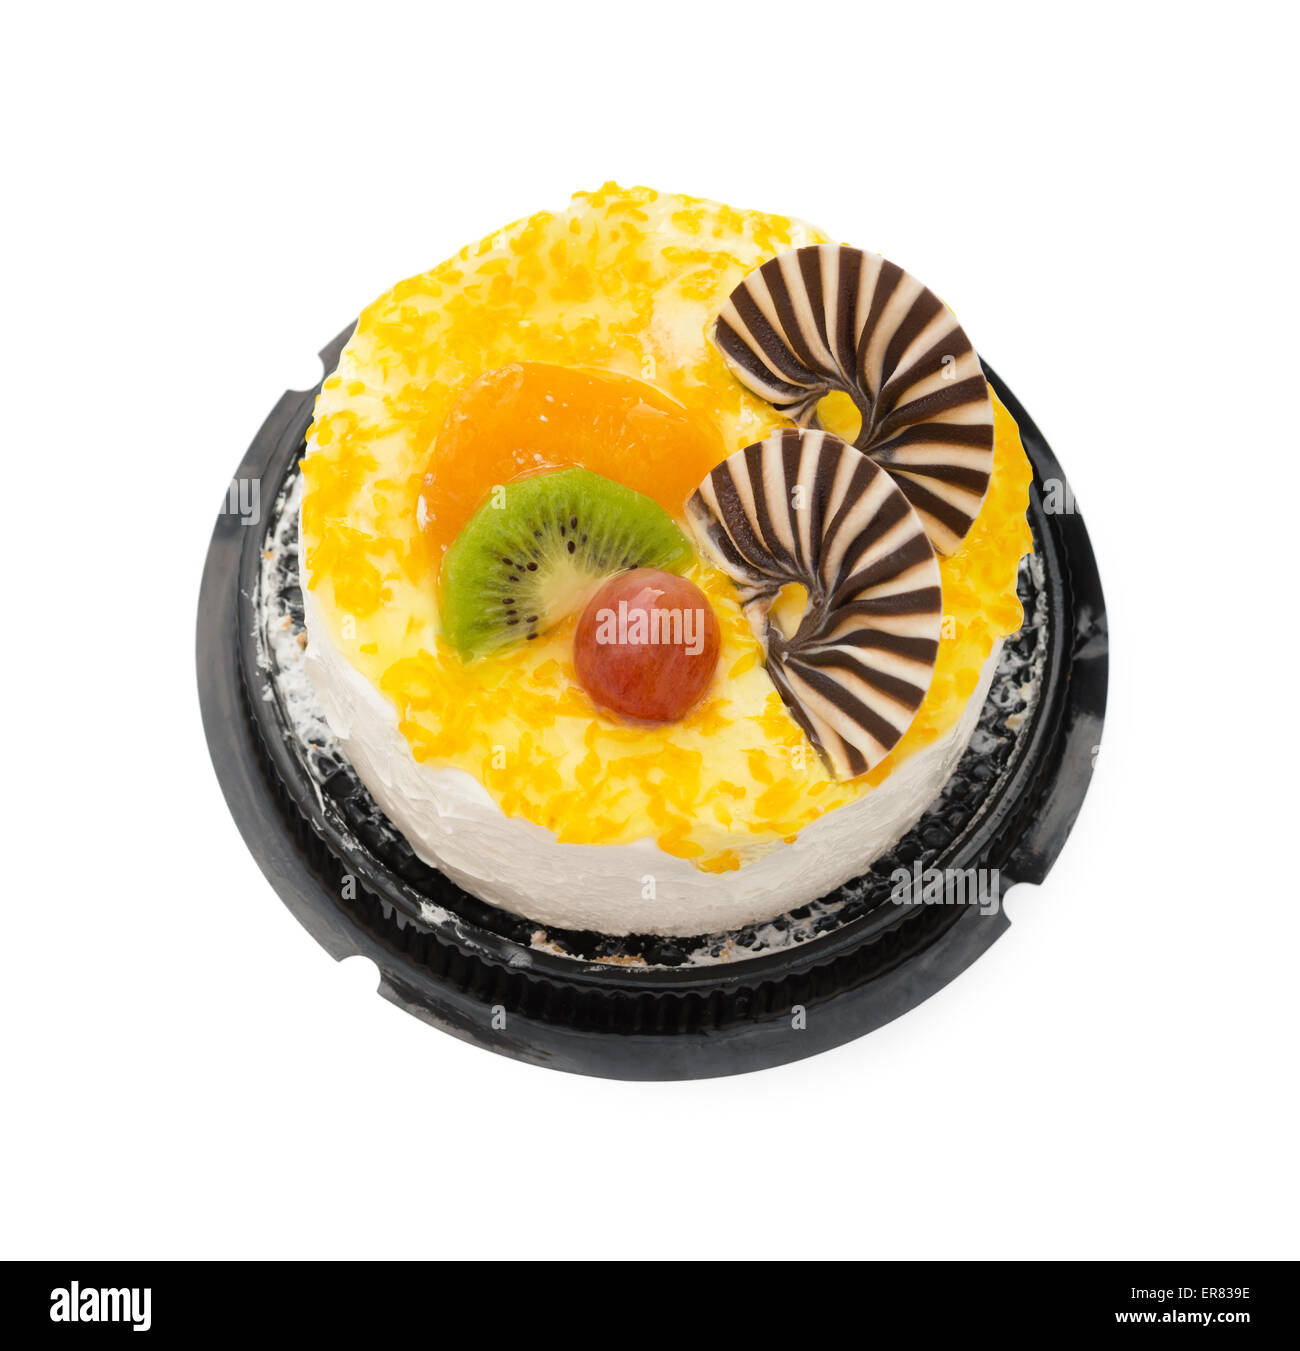 Draufsicht auf leckeren Kuchen auf weiß mit Traube orange Kiwi und Schokolade am besten, Clipping-Pfad enthalten Stockfoto